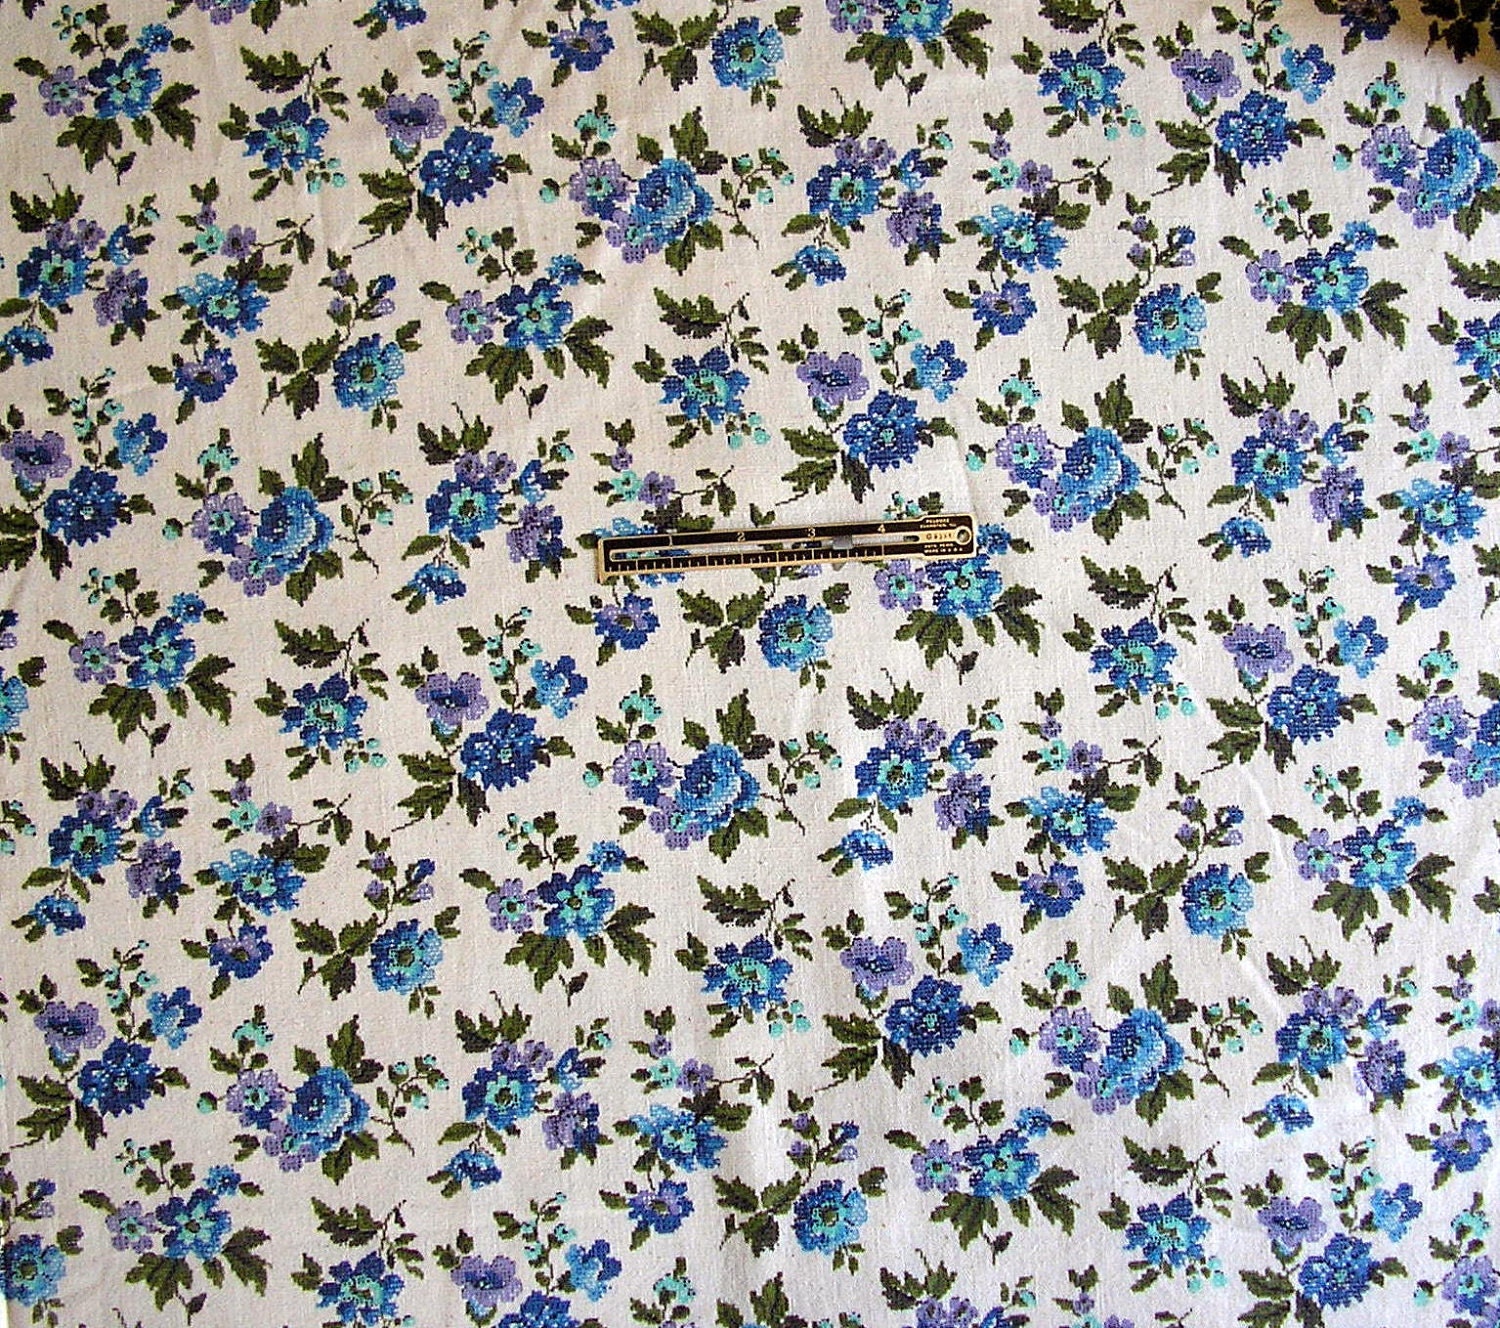 Flower arrangement cross stitch pattern.